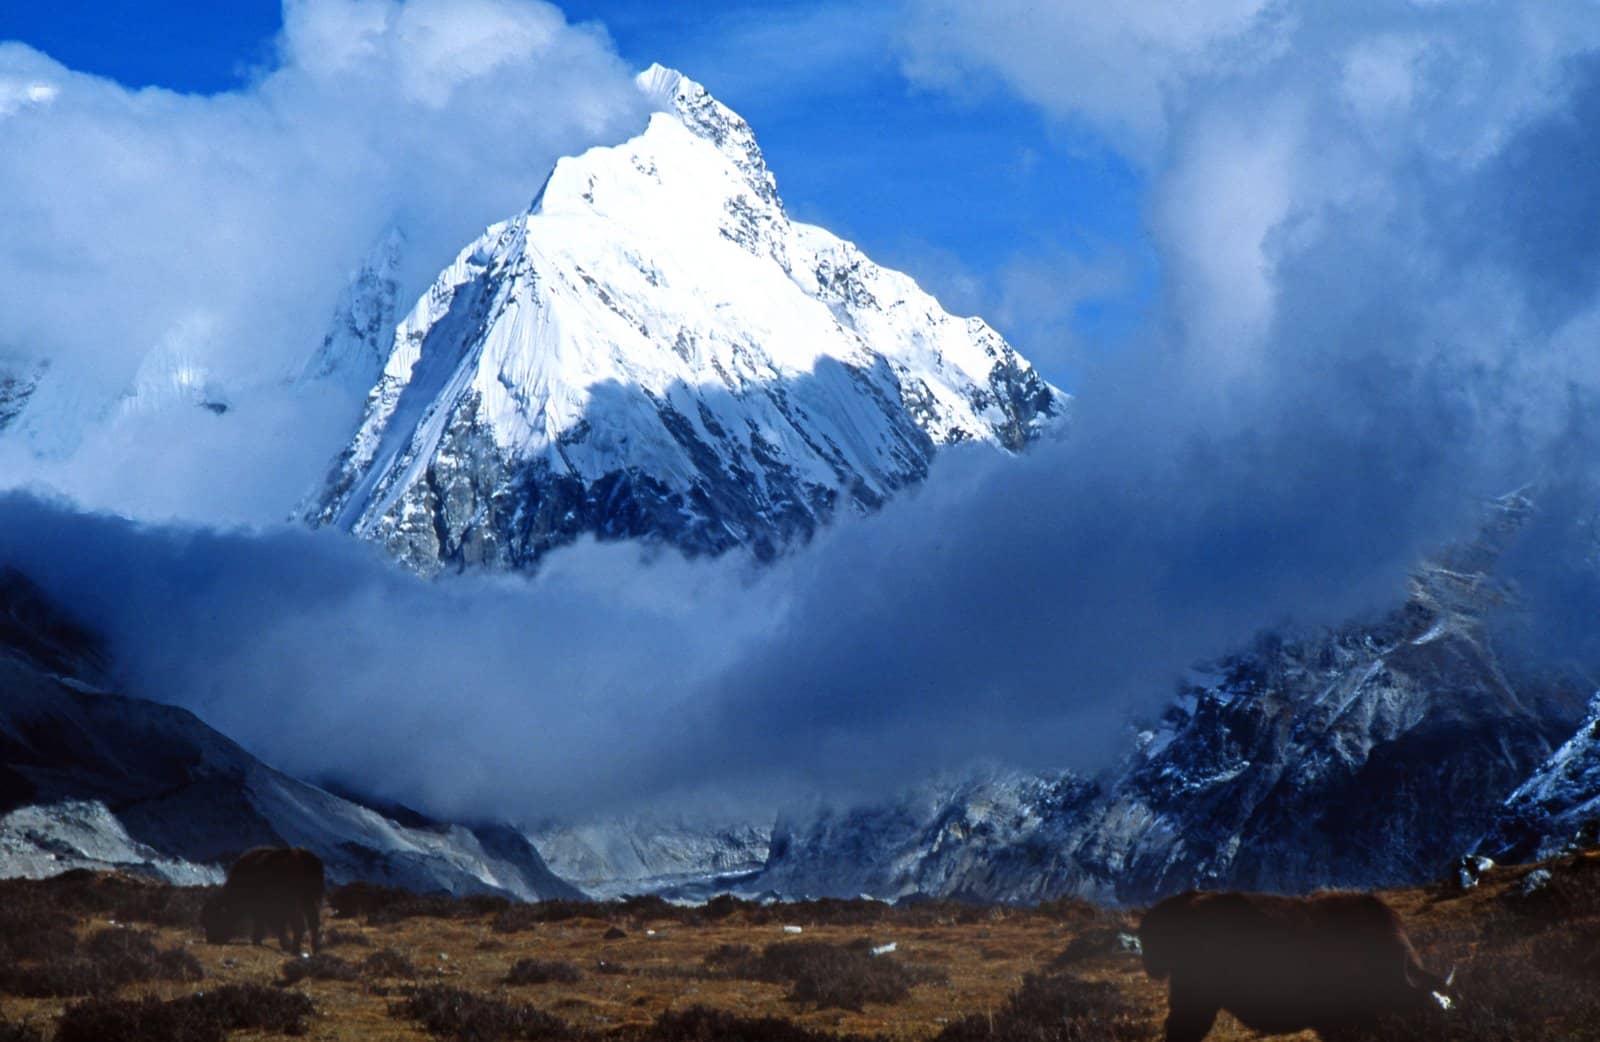 Скандинавские гималаи. Непал вершина Канченджанга. Горный массив Канченджанга. Канченджанга Гималаи 8586 метров. Канченджанга 5 вершин.